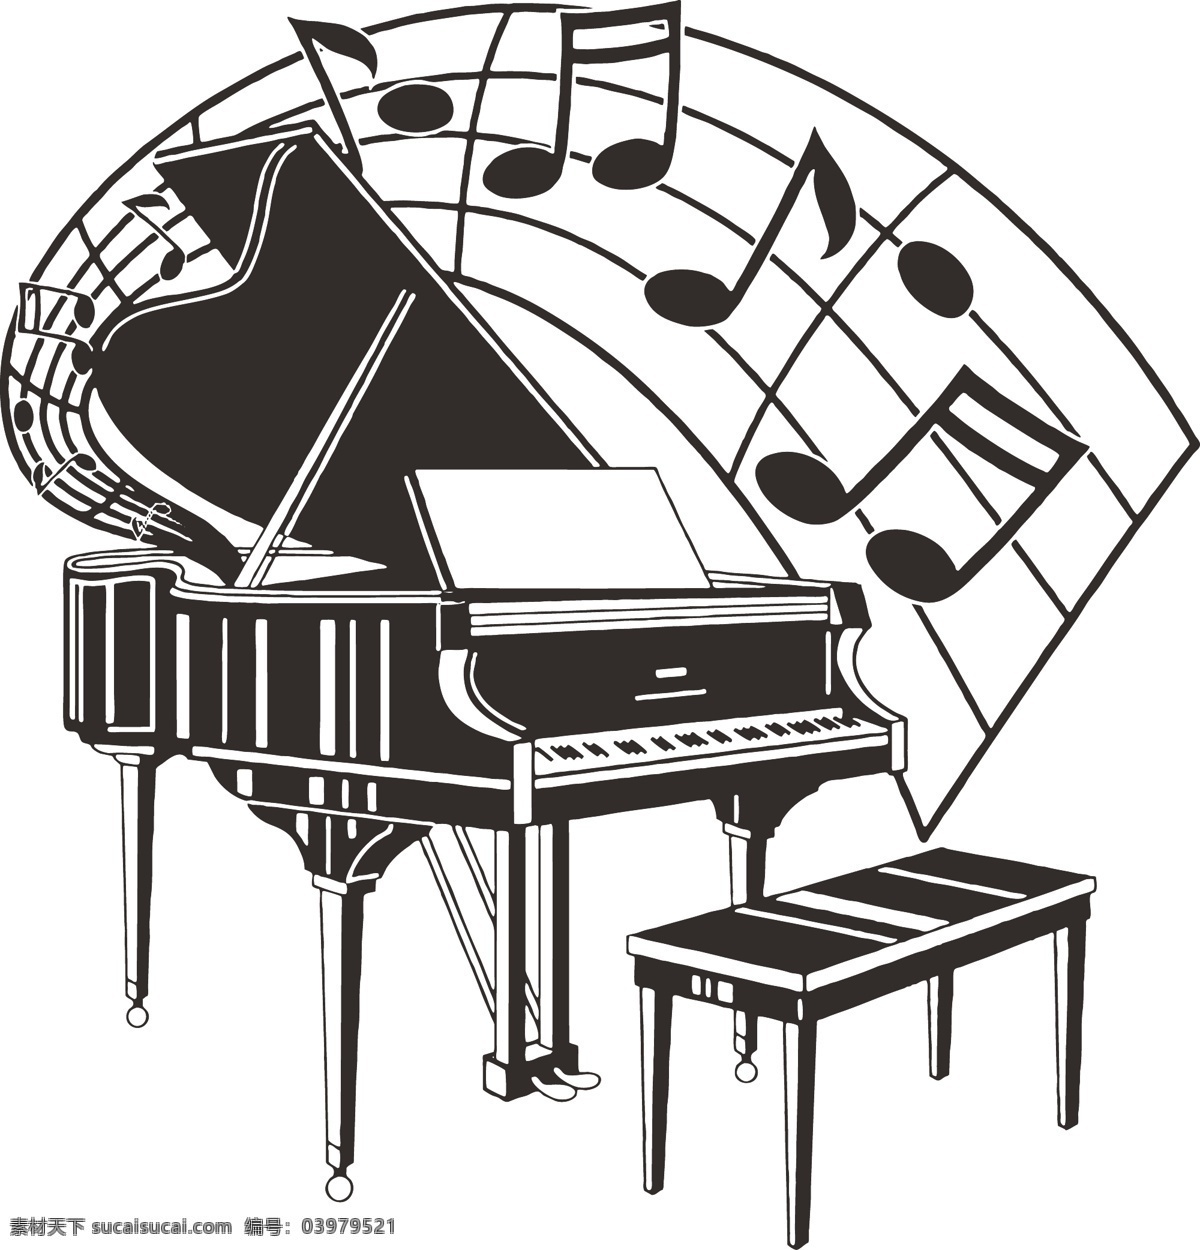 钢琴 琴 行 音乐 可编辑 琴行 音乐素材 矢量图 其他矢量图